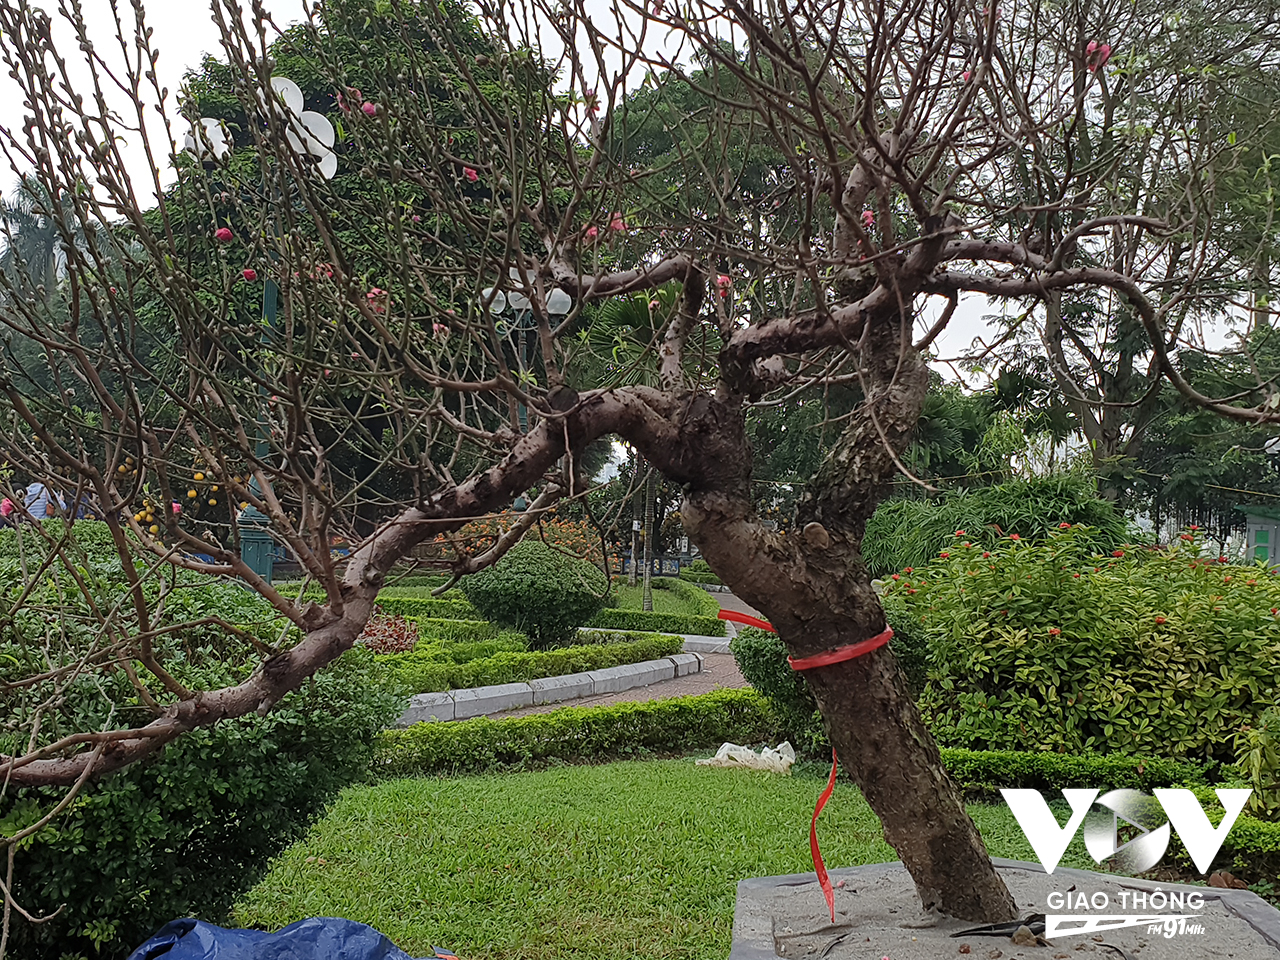 Thời tiết những ngày này ở Hà Nội được xem là khá thuận lợi với cây đào, không quá nắng hoặc quá khắc nghiệt khiến hoa nở sớm.